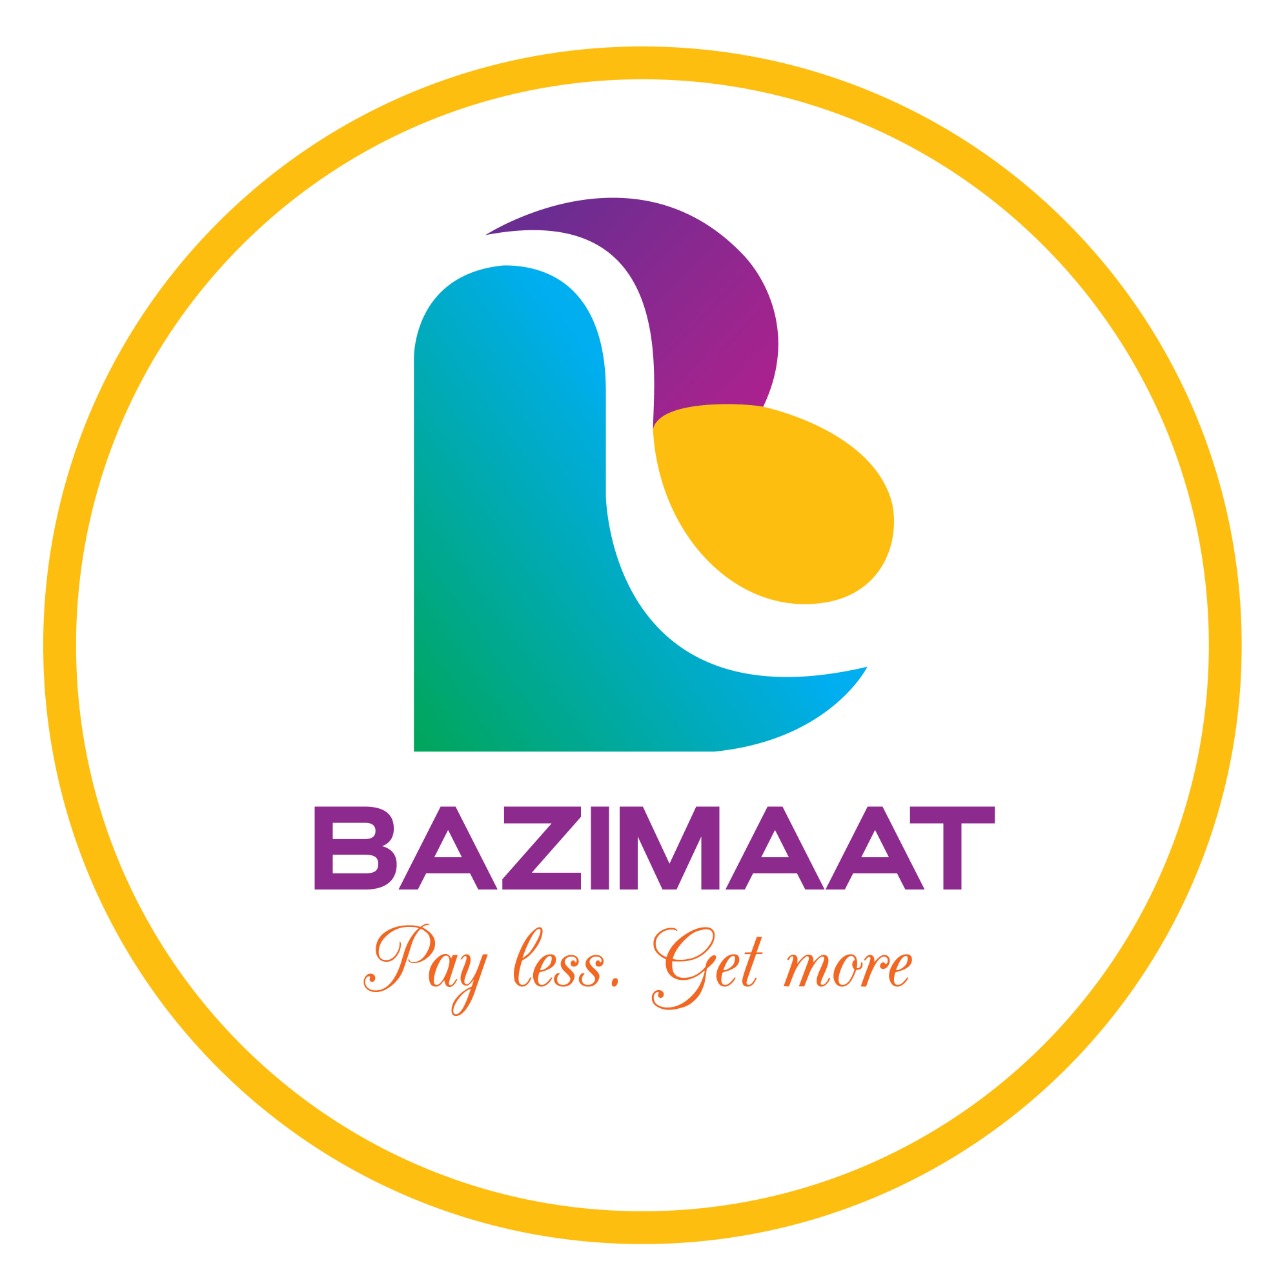 Bazimaat